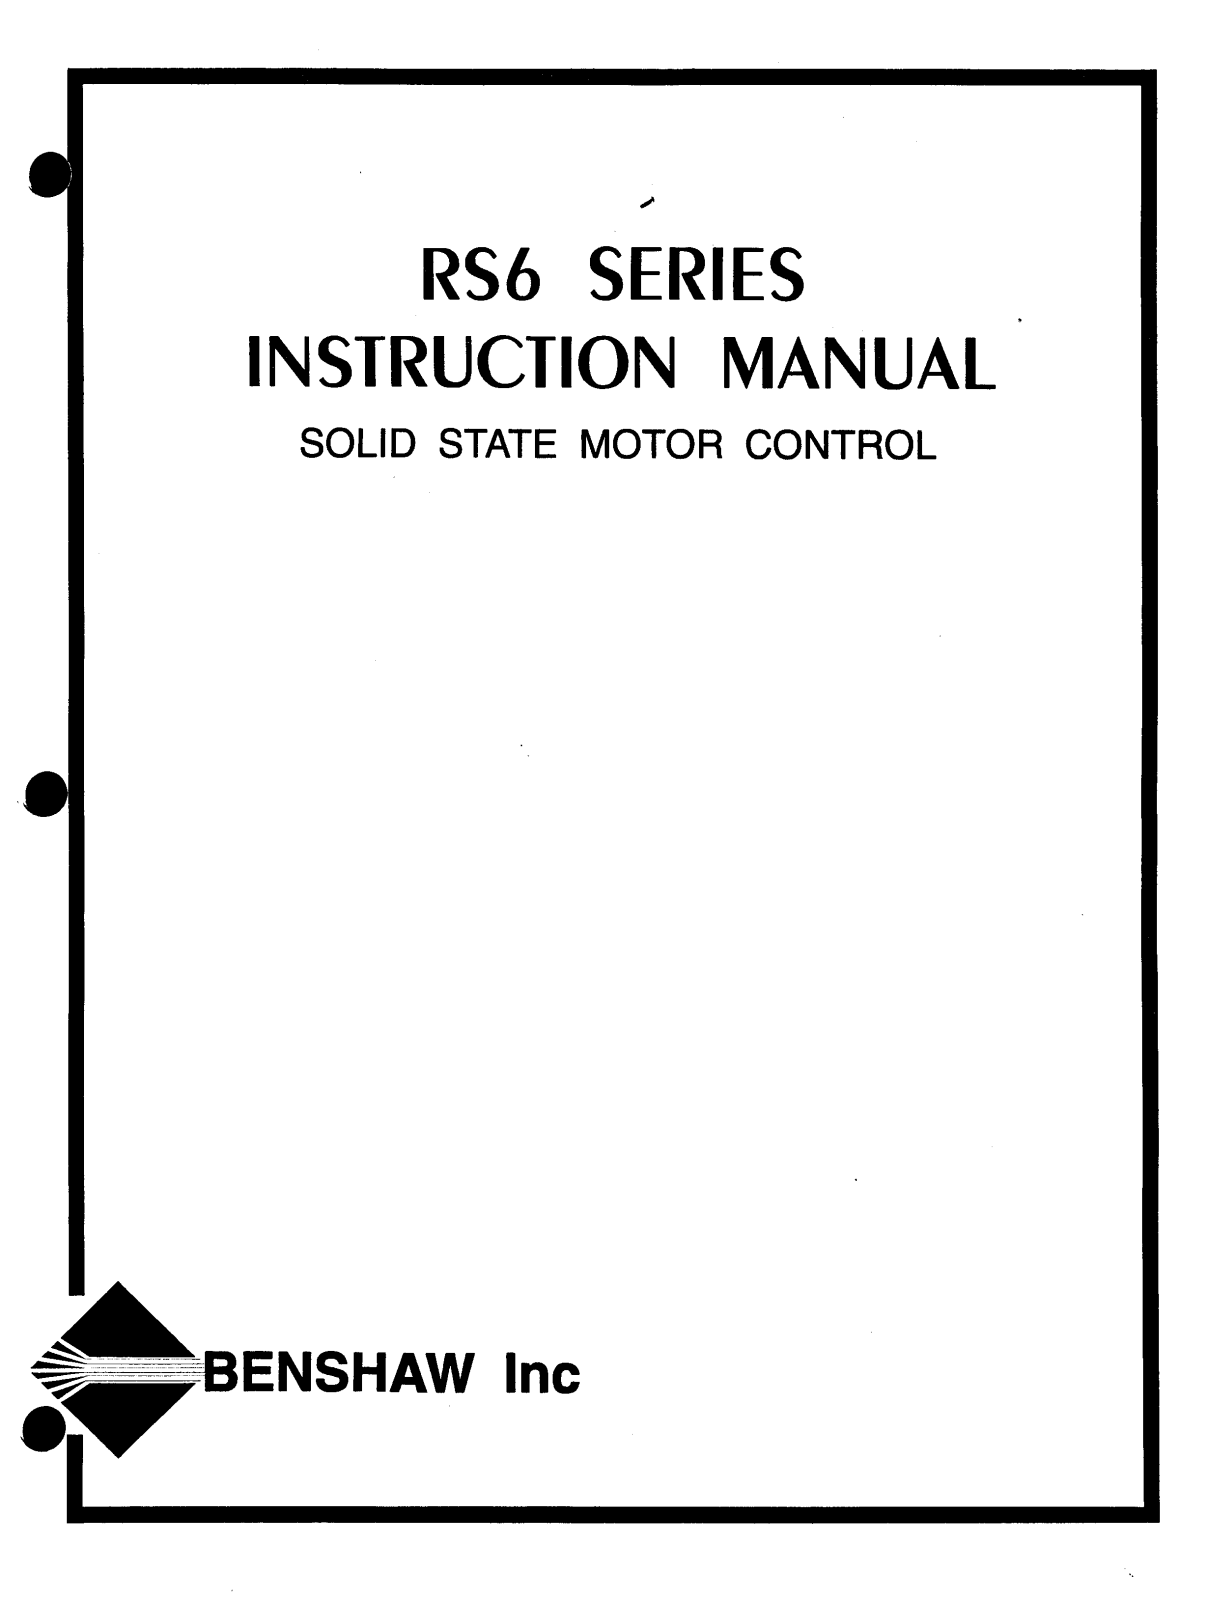 Benshaw RS6 Manual